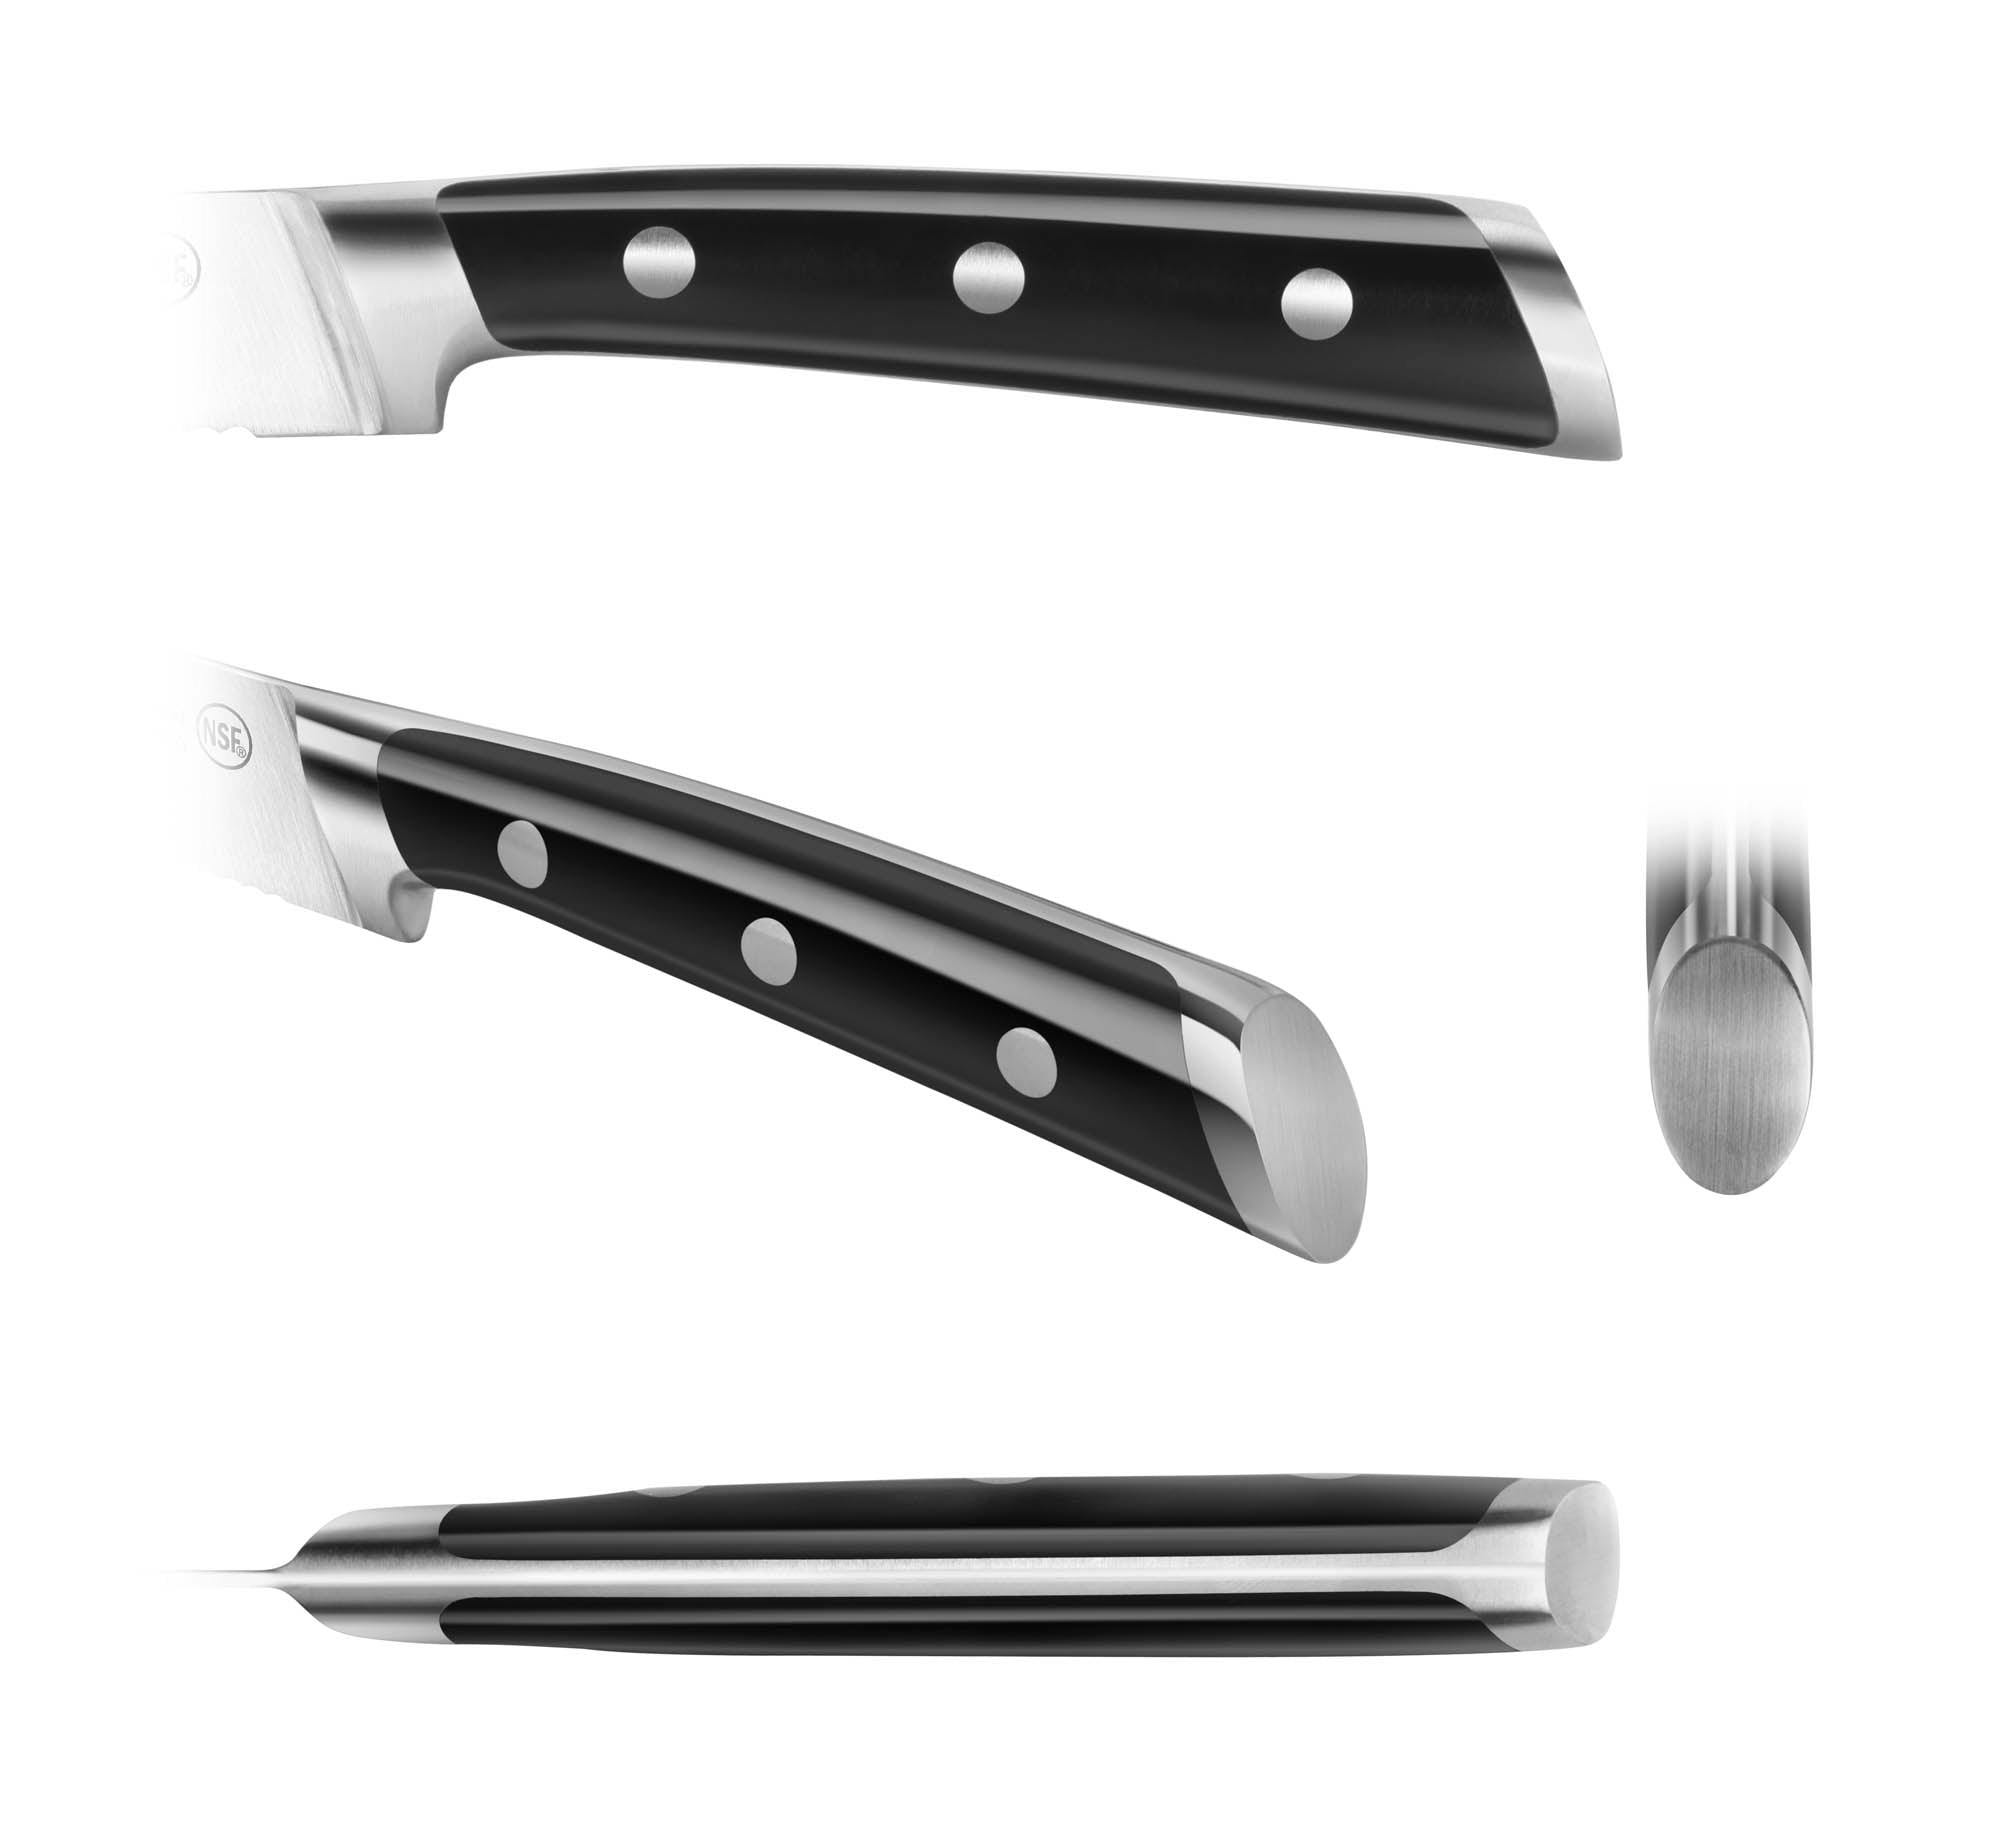 Cangshan TS Series 5" Serrated Utility Knife